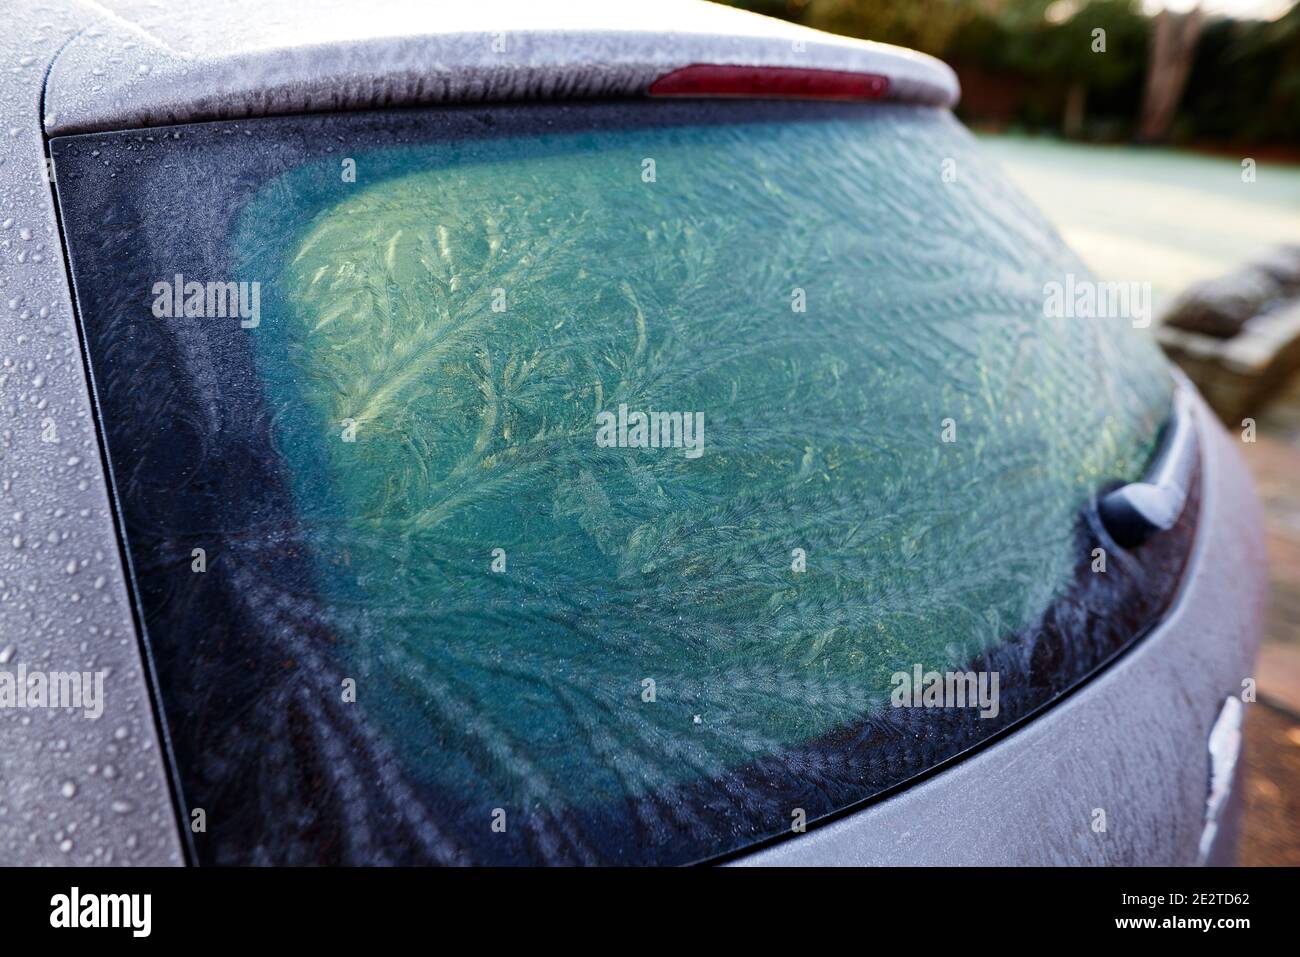 Cars frozen rear windscreen Stock Photo